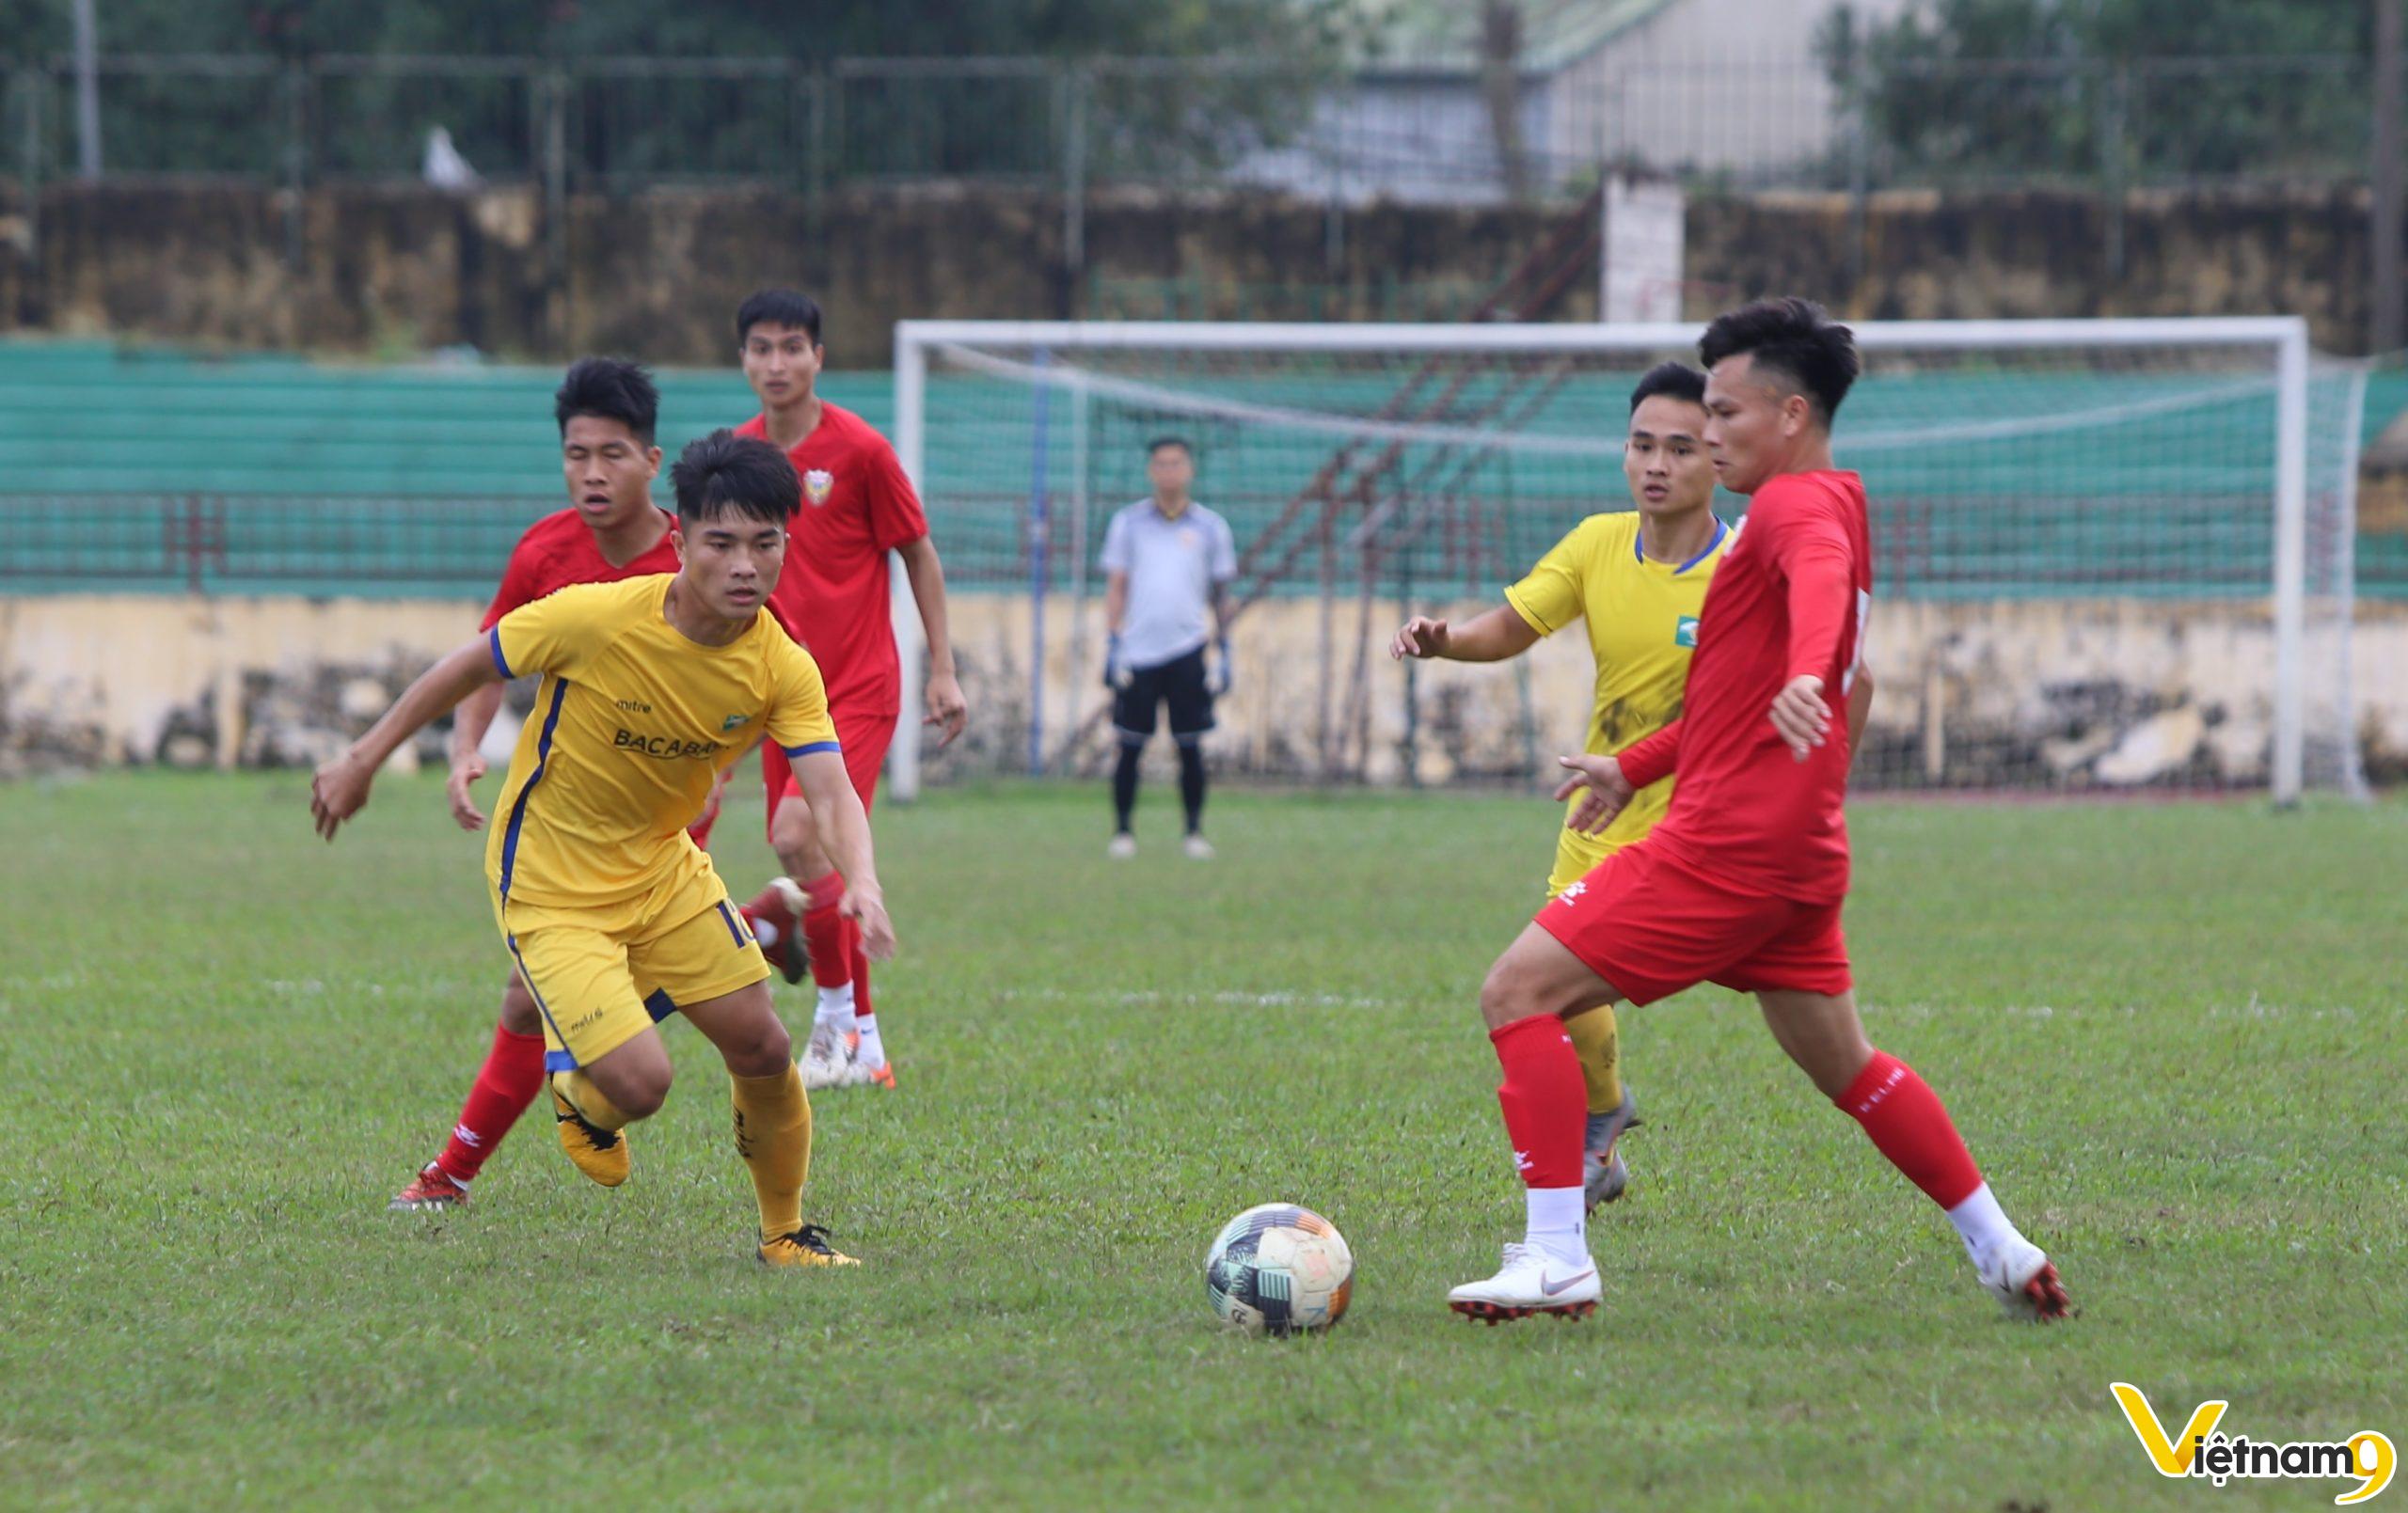 Photo of Lê Tấn Tài và nhiệm vụ đặc biệt tại đội bóng tân binh V.League 2020